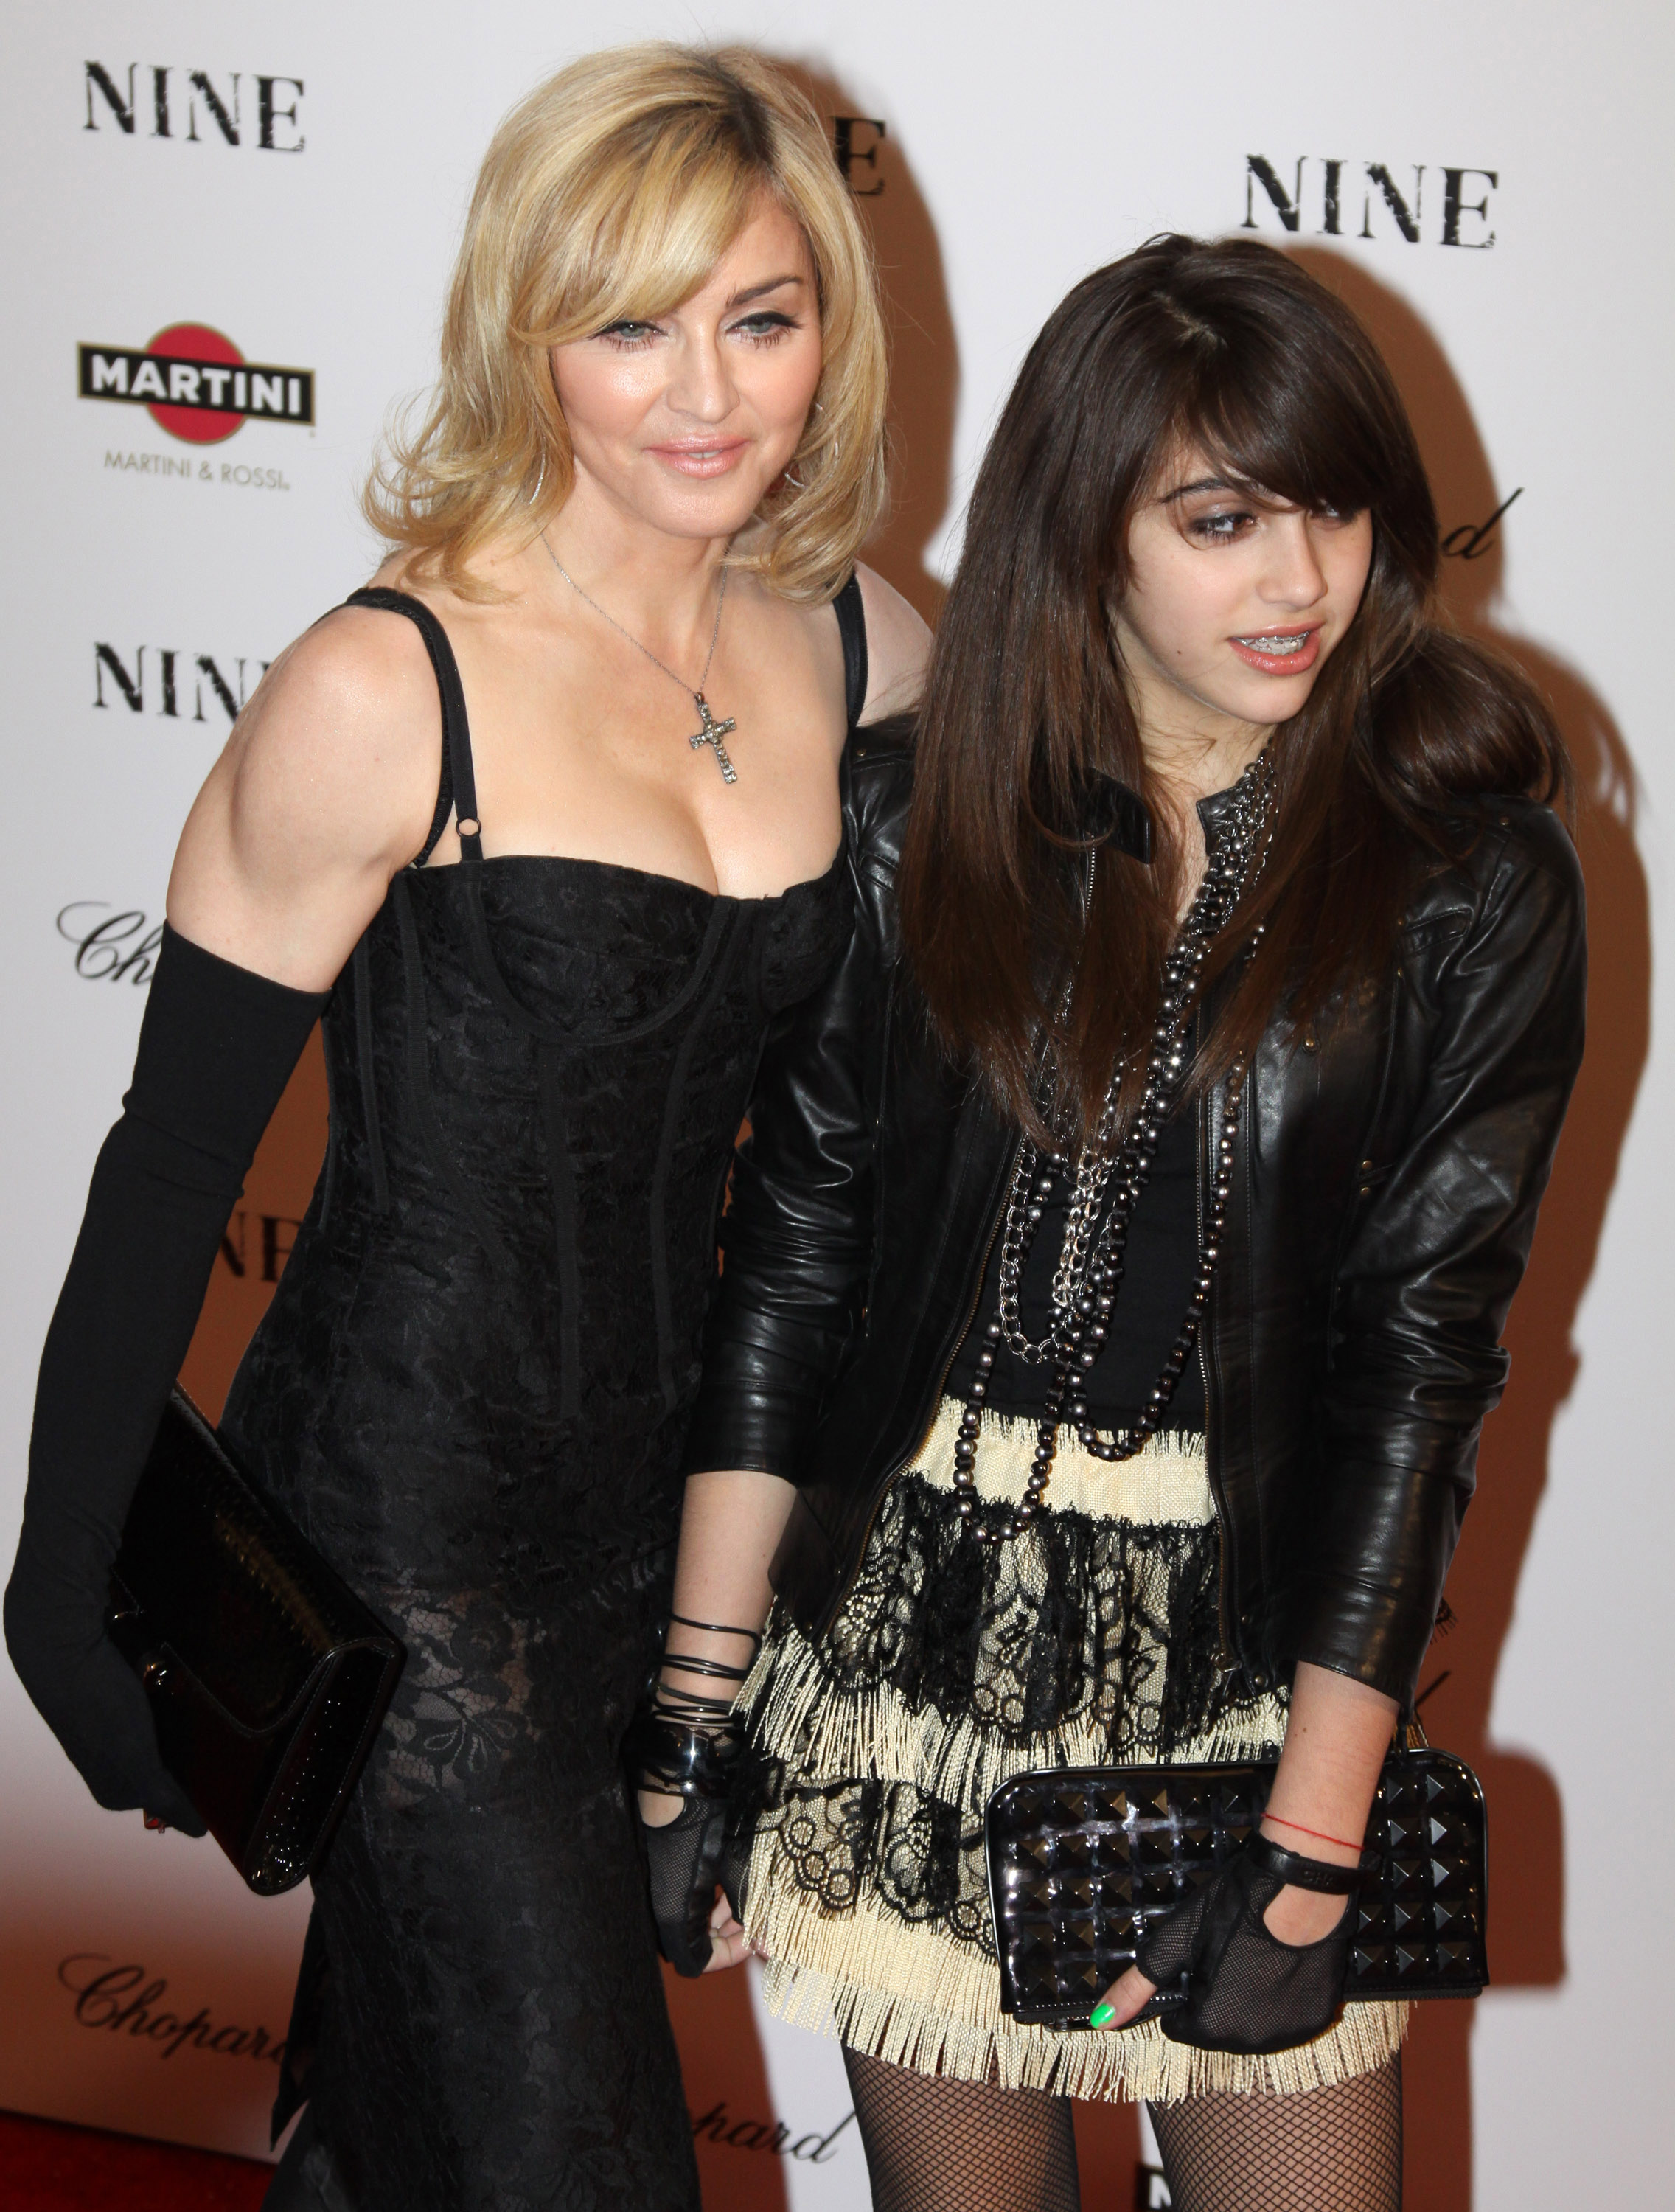 Madonna y su hija Lourdes "Lola" León asisten al estreno de "Nine" el 15 de diciembre de 2009 en Nueva York | Foto: Getty Images